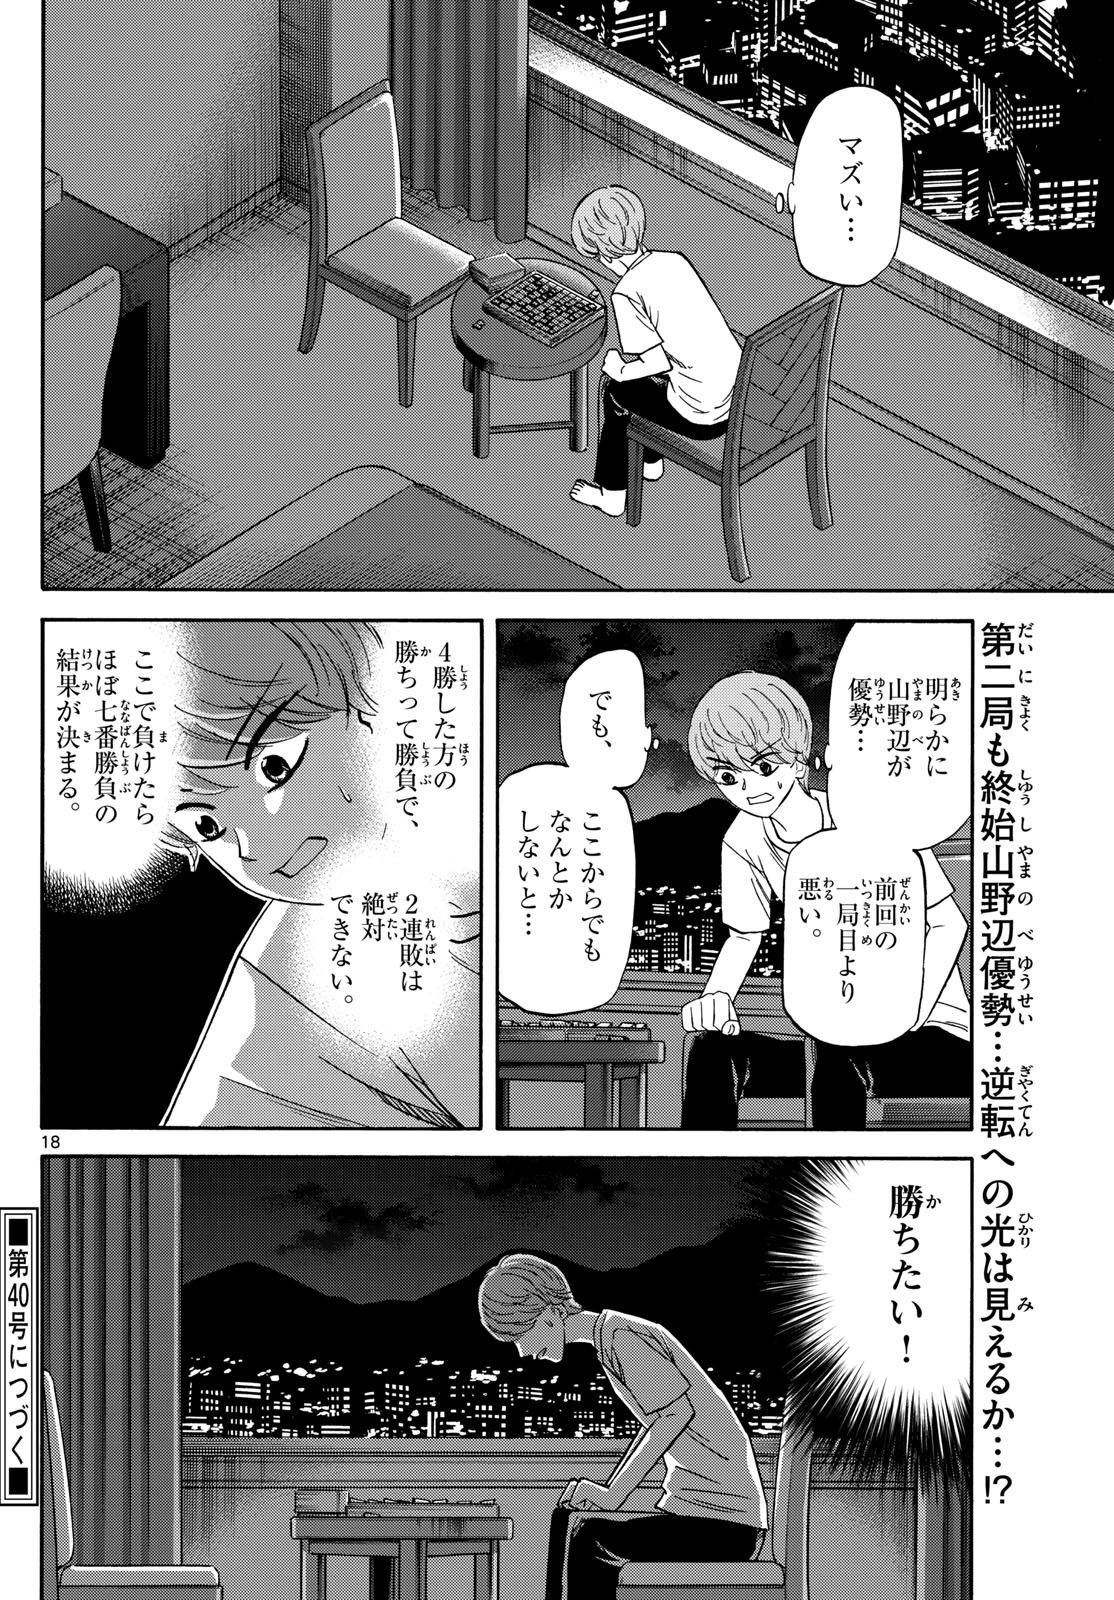 Ryu-to-Ichigo - Chapter 156 - Page 18